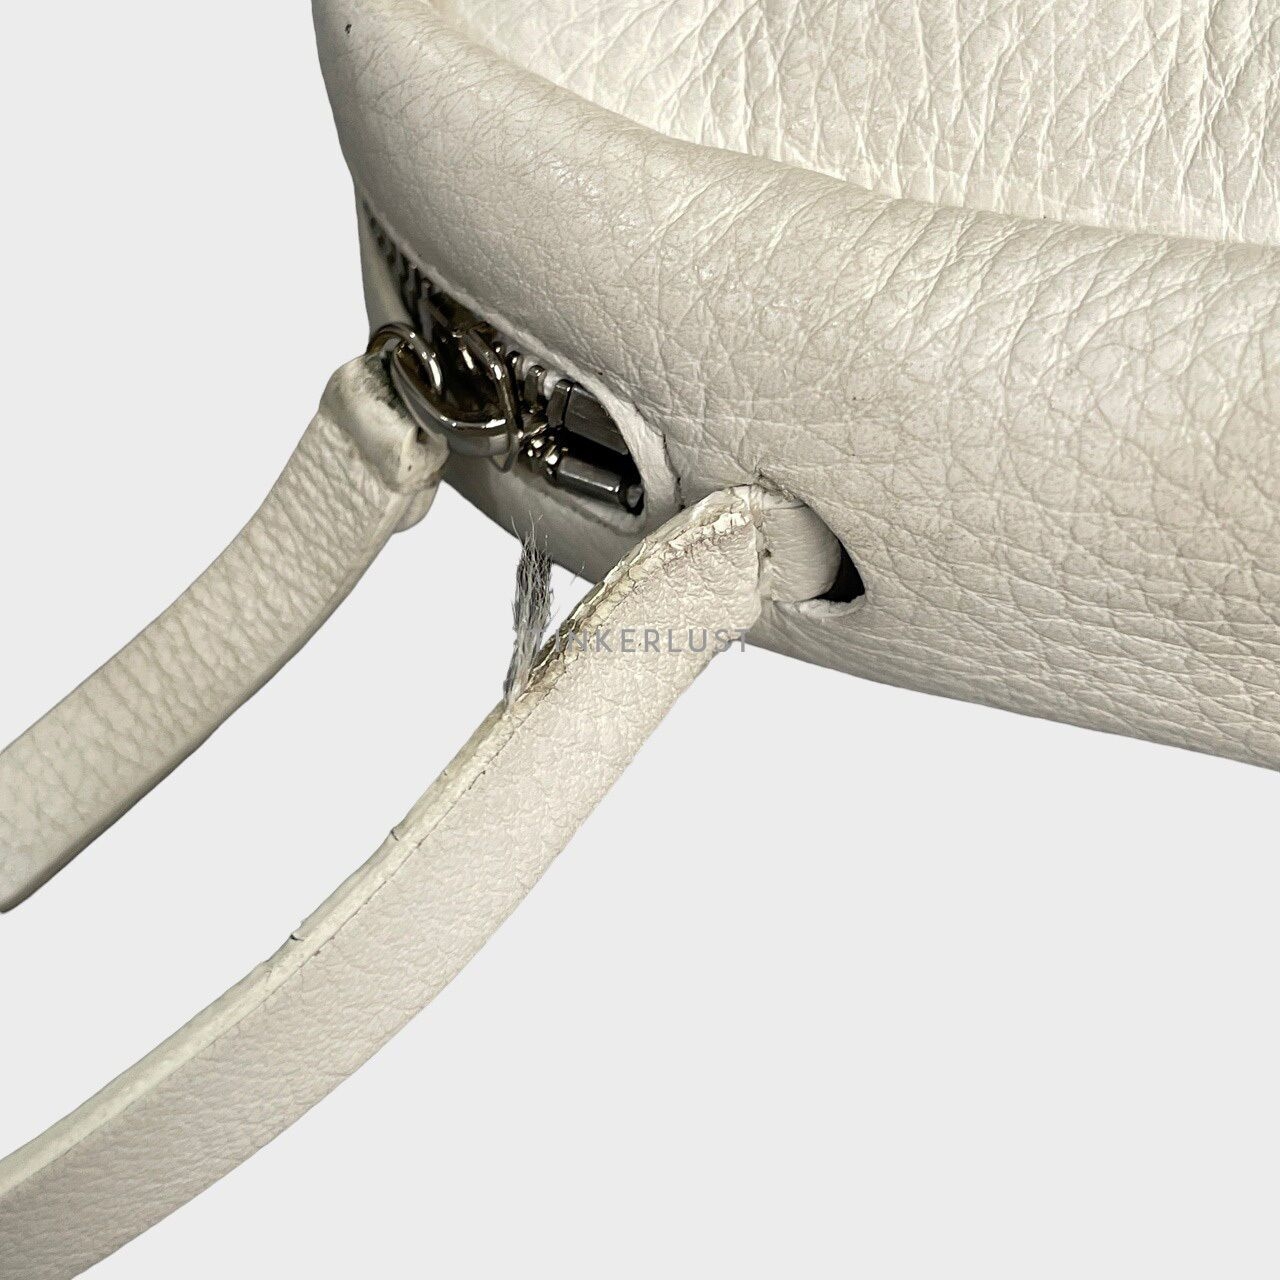 Balenciaga Everyday Camera Bag White Calfskin SHW Sling Bag